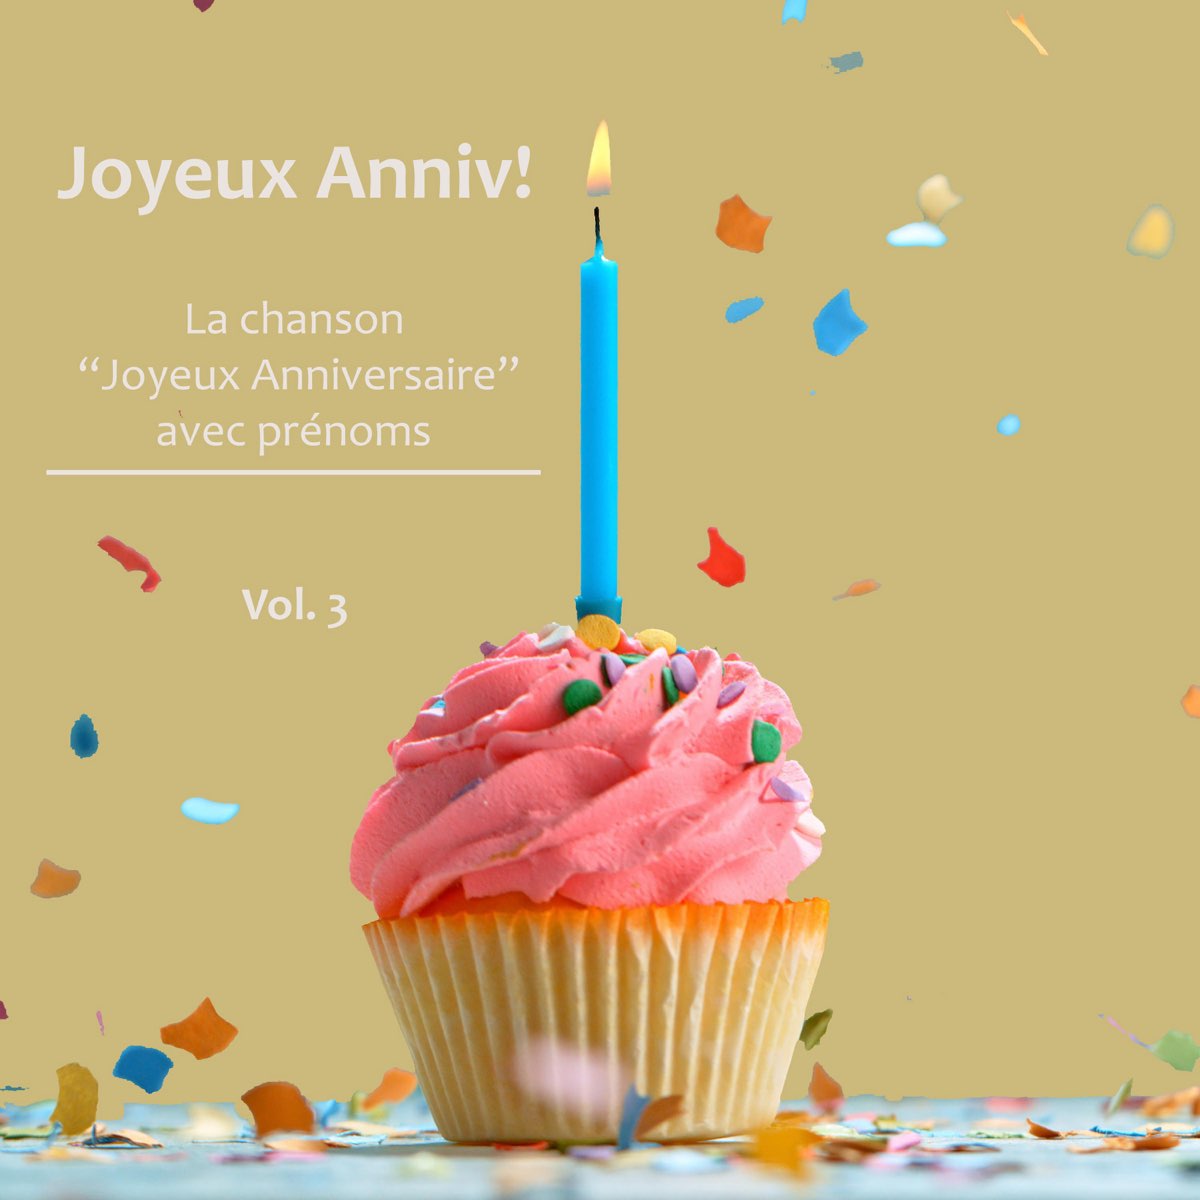 Joyeux anniversaire avec prénoms, Vol. 3 – Album par Joyeux Anniv! – Apple  Music